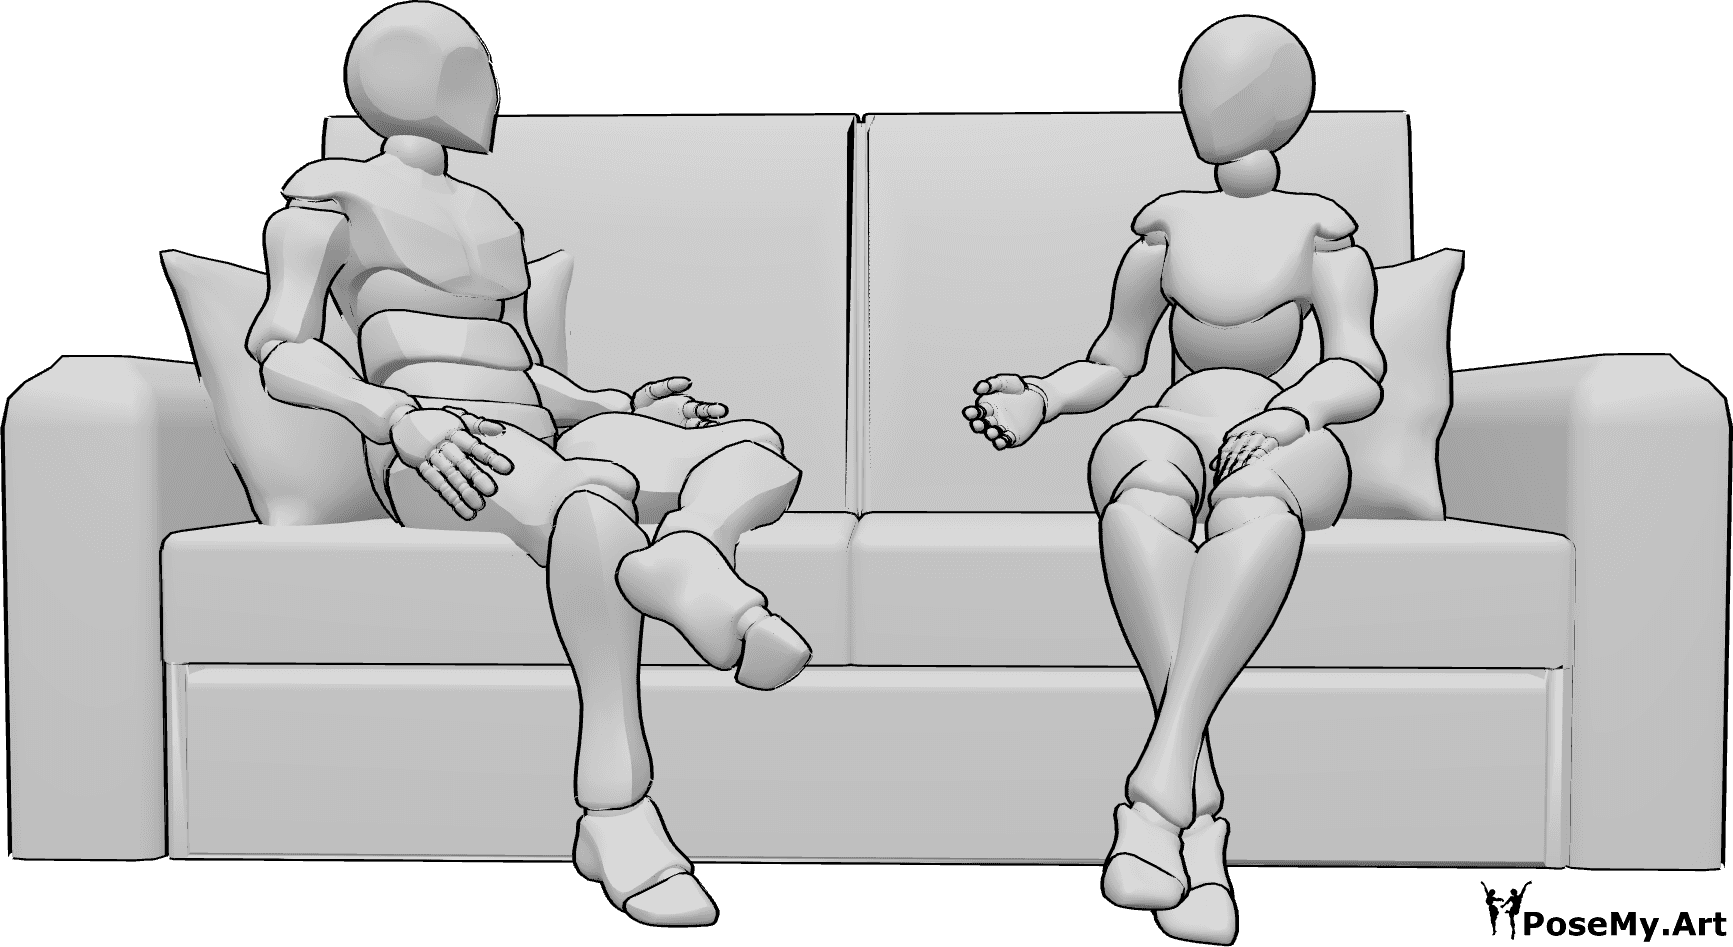 Referencia de poses- Postura de conversación entre hombre y mujer - Mujer y hombre están sentados en el sofá, mirándose y hablando